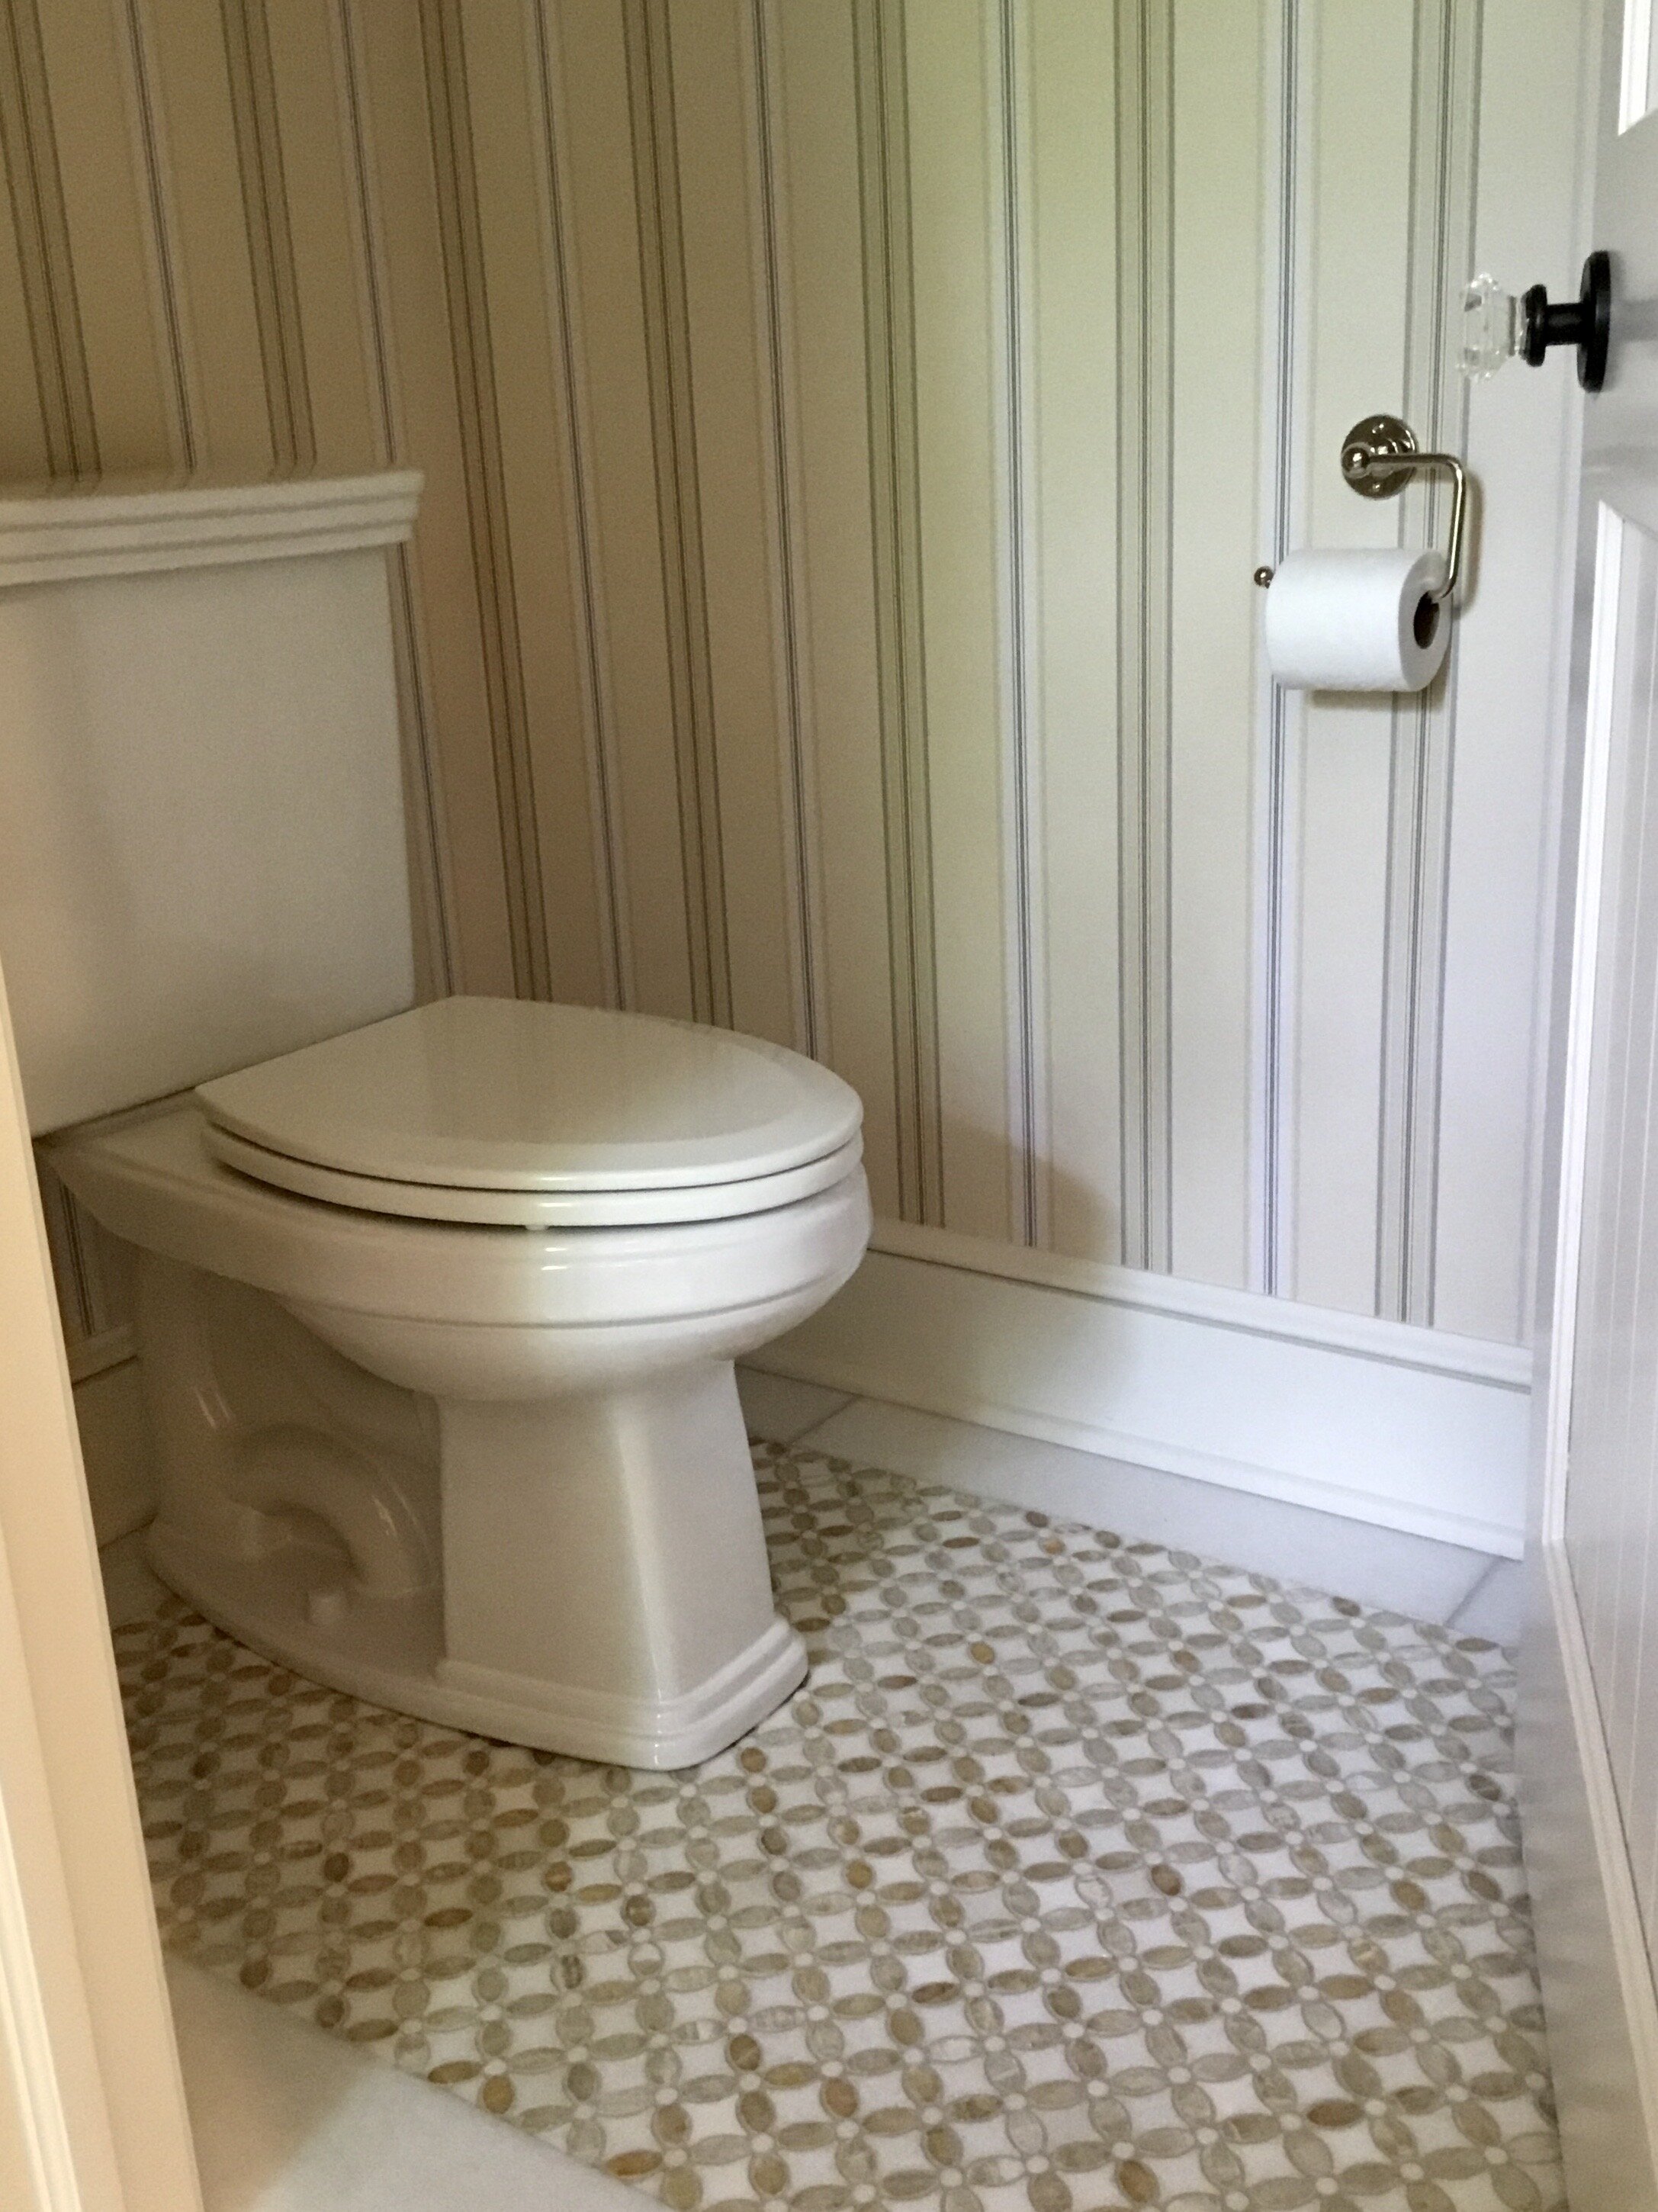 Toilet Room Design Idea